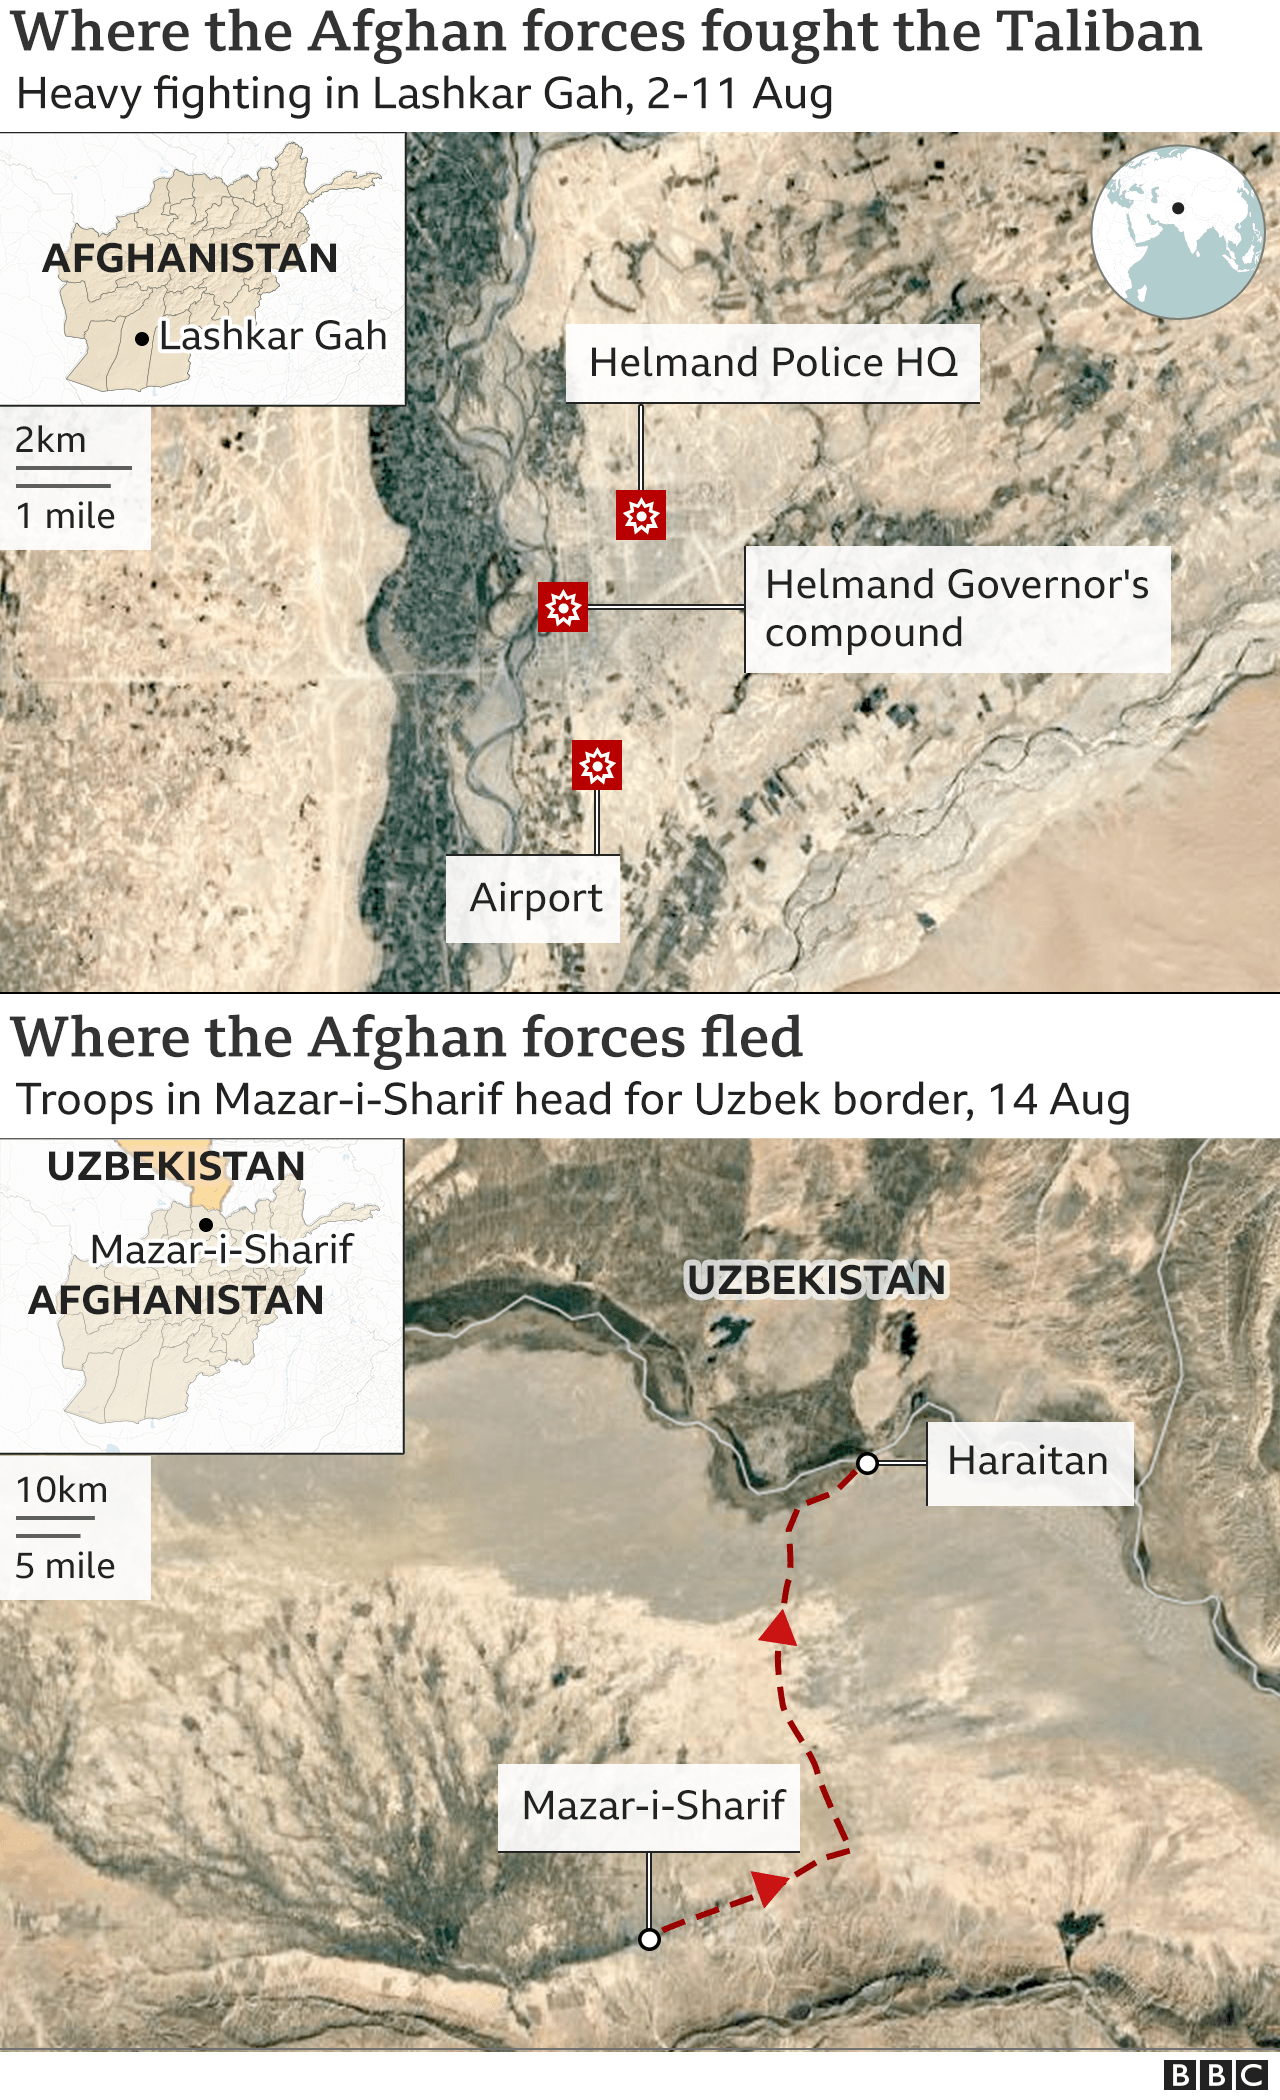 Χάρτες για το πού πολέμησαν οι δυνάμεις ασφαλείας και πού έφυγαν.  16 Αυγούστου